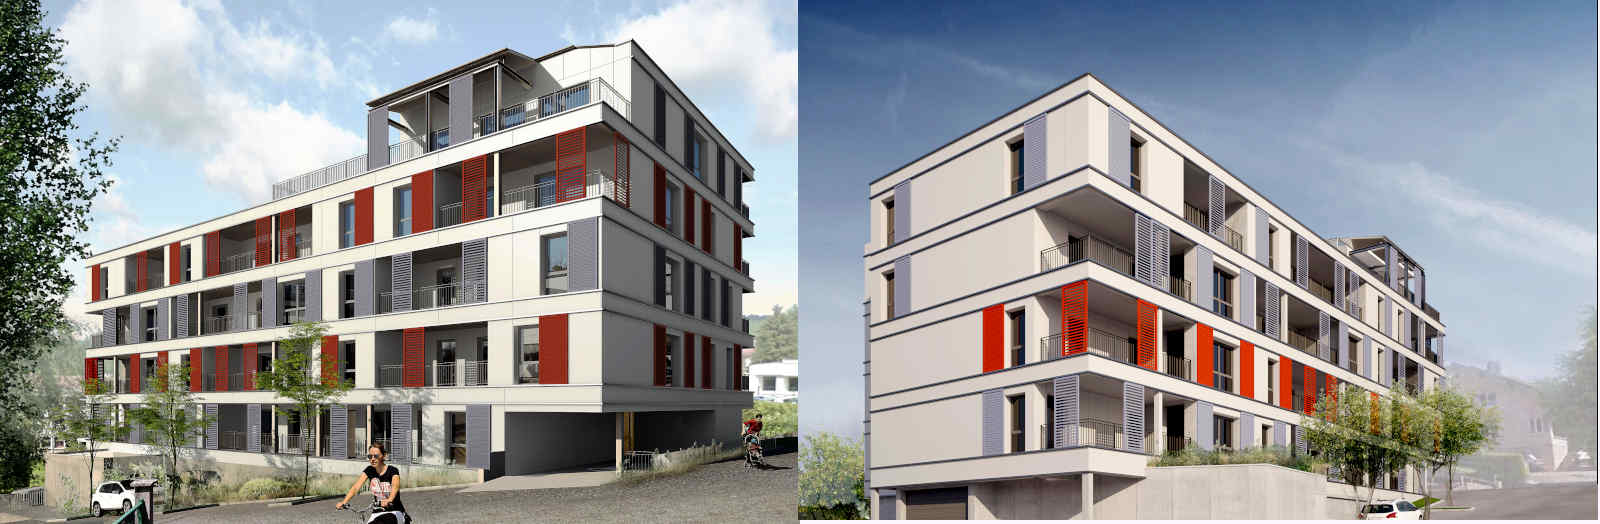 Résidence Nouvelle Héloïse à Morteau: 25 appartements neufs au centre-ville livrés en 2021